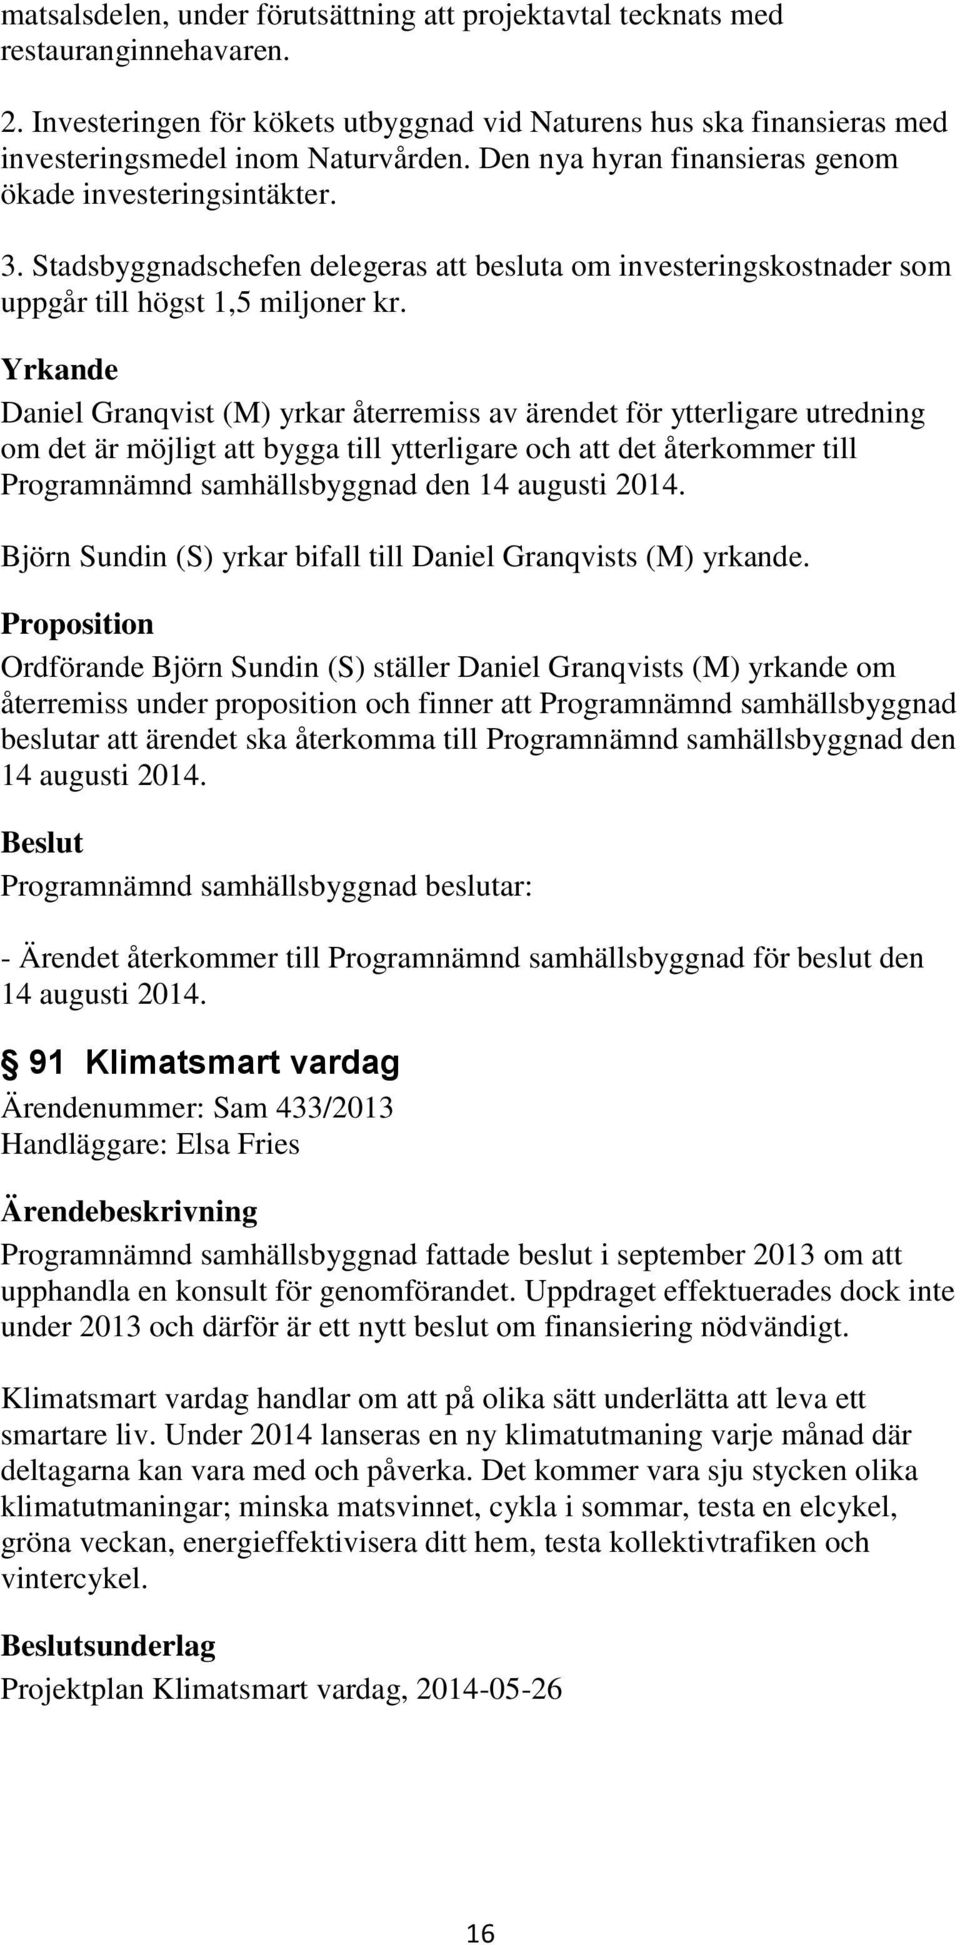 Yrkande Daniel Granqvist (M) yrkar återremiss av ärendet för ytterligare utredning om det är möjligt att bygga till ytterligare och att det återkommer till Programnämnd samhällsbyggnad den 14 augusti